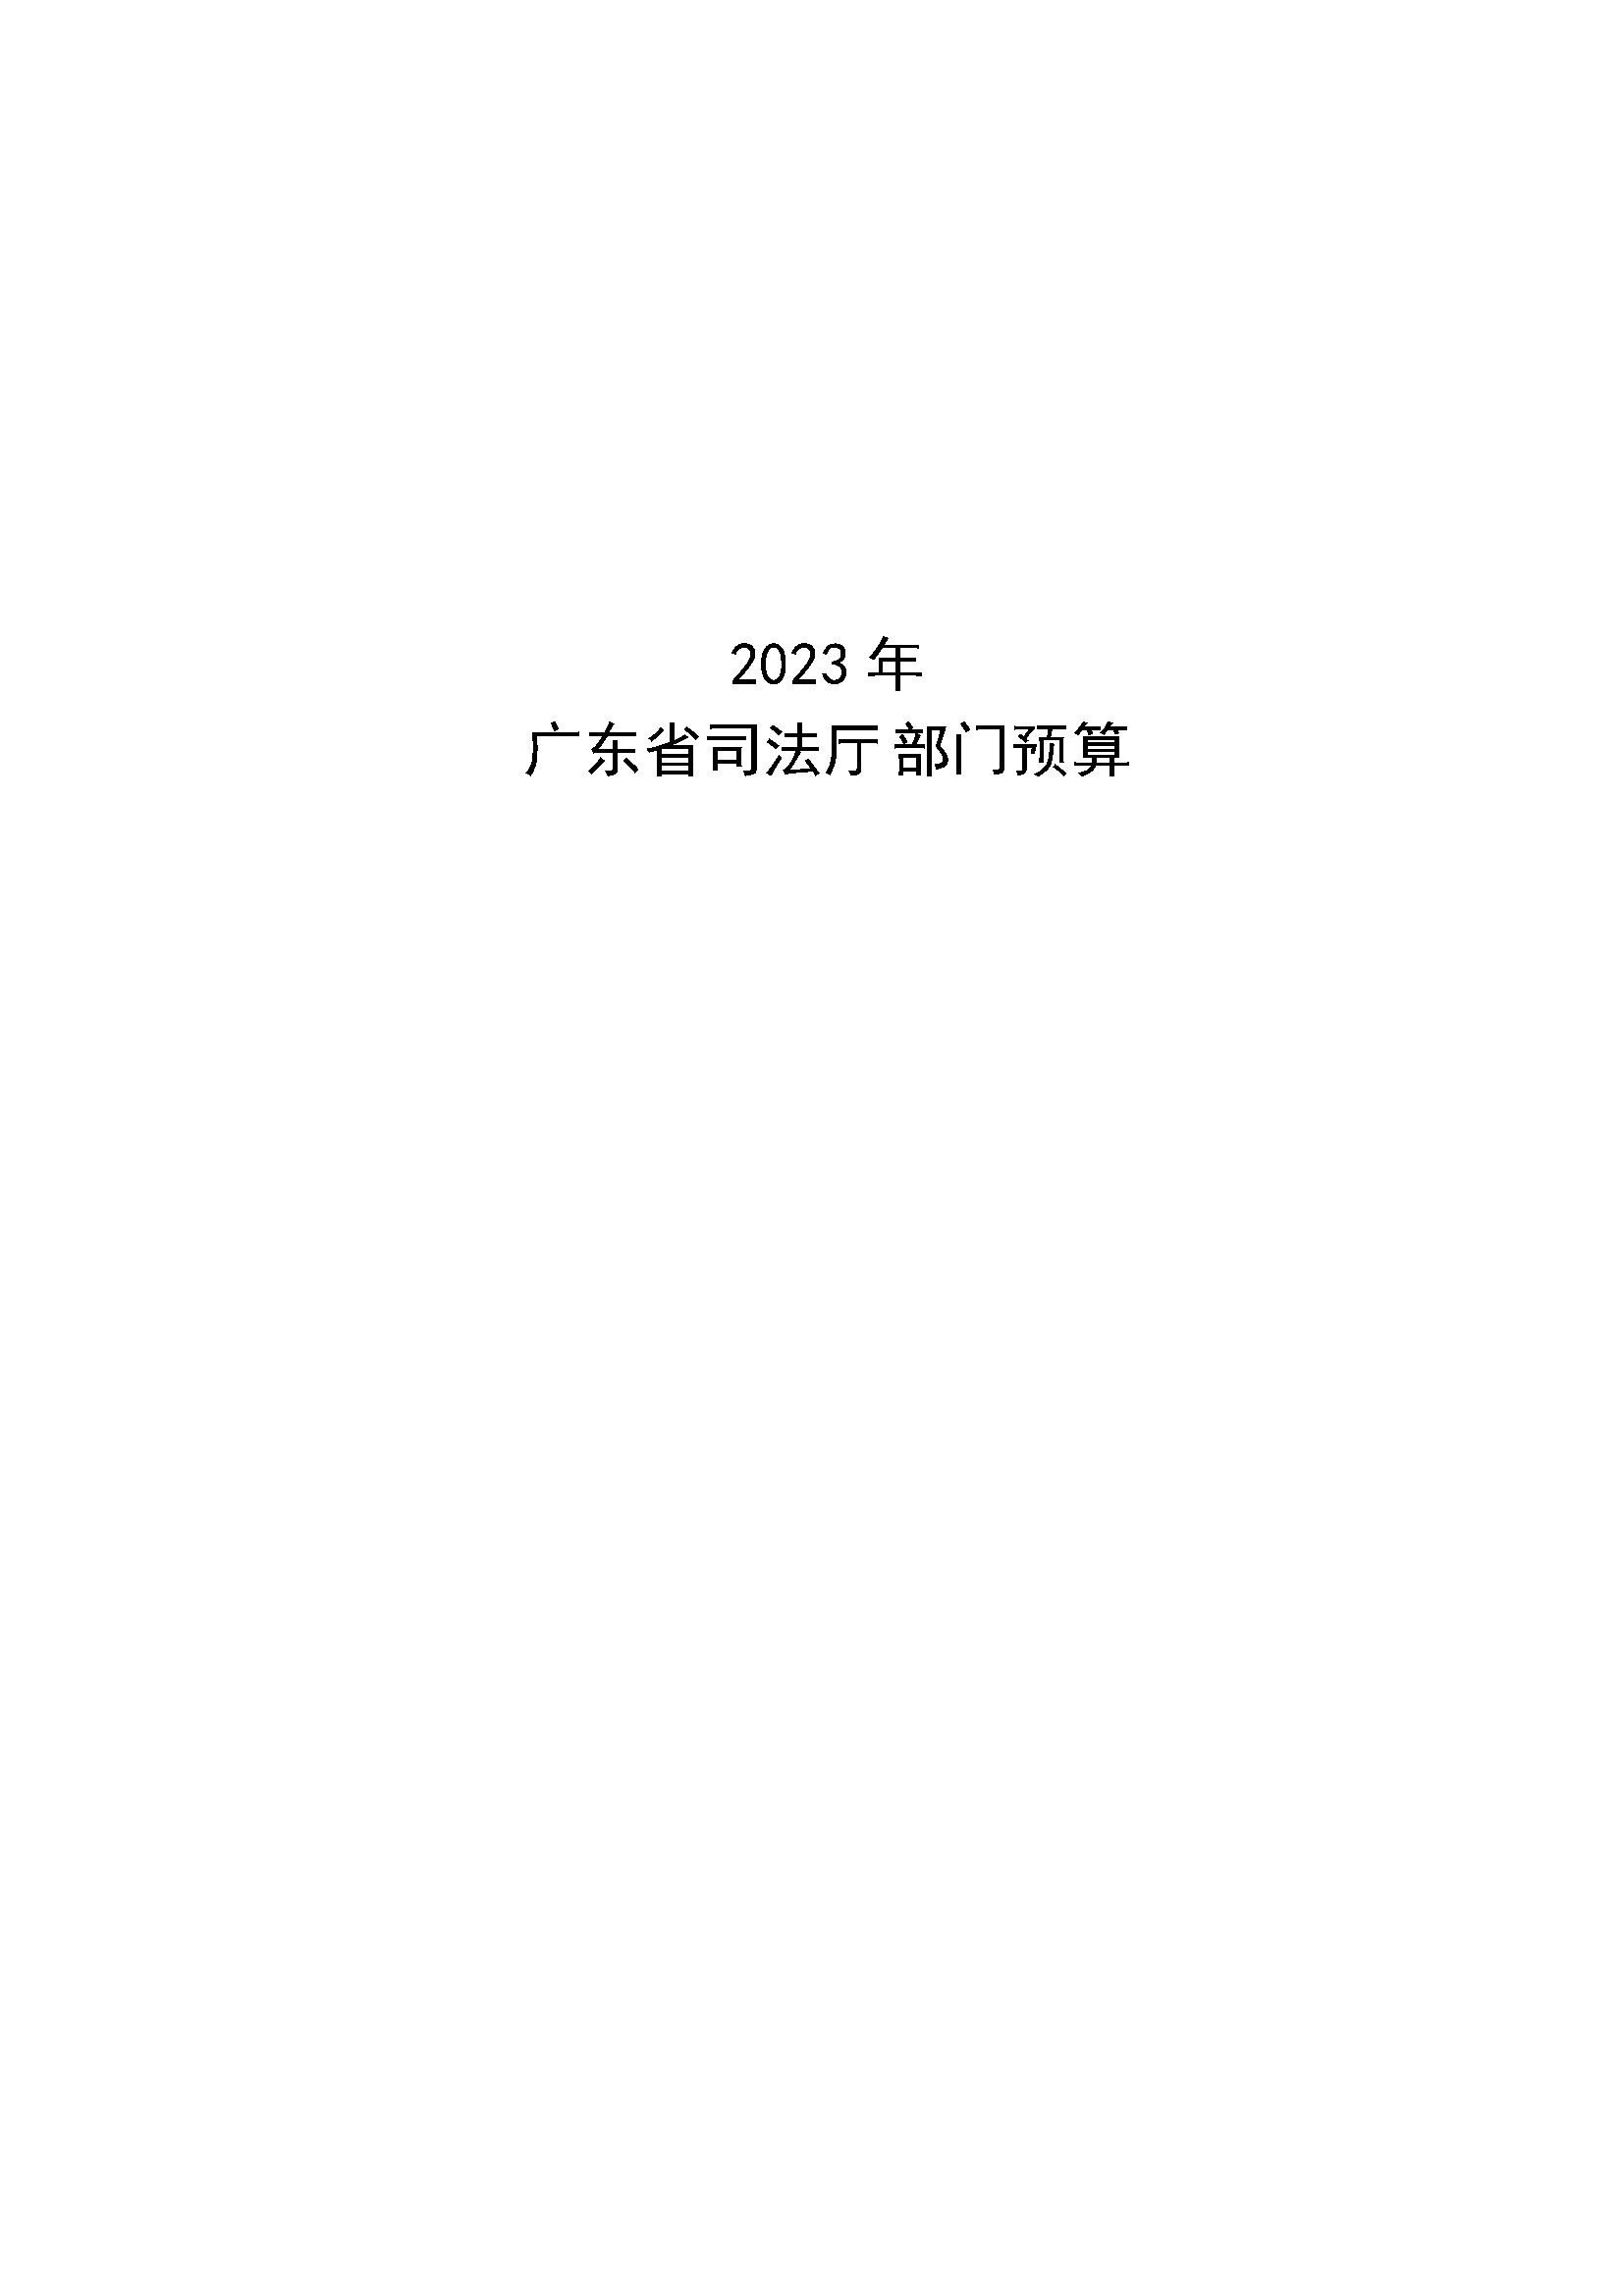 2023年广东省司法厅部门预算_(0213)_页面_01.jpg